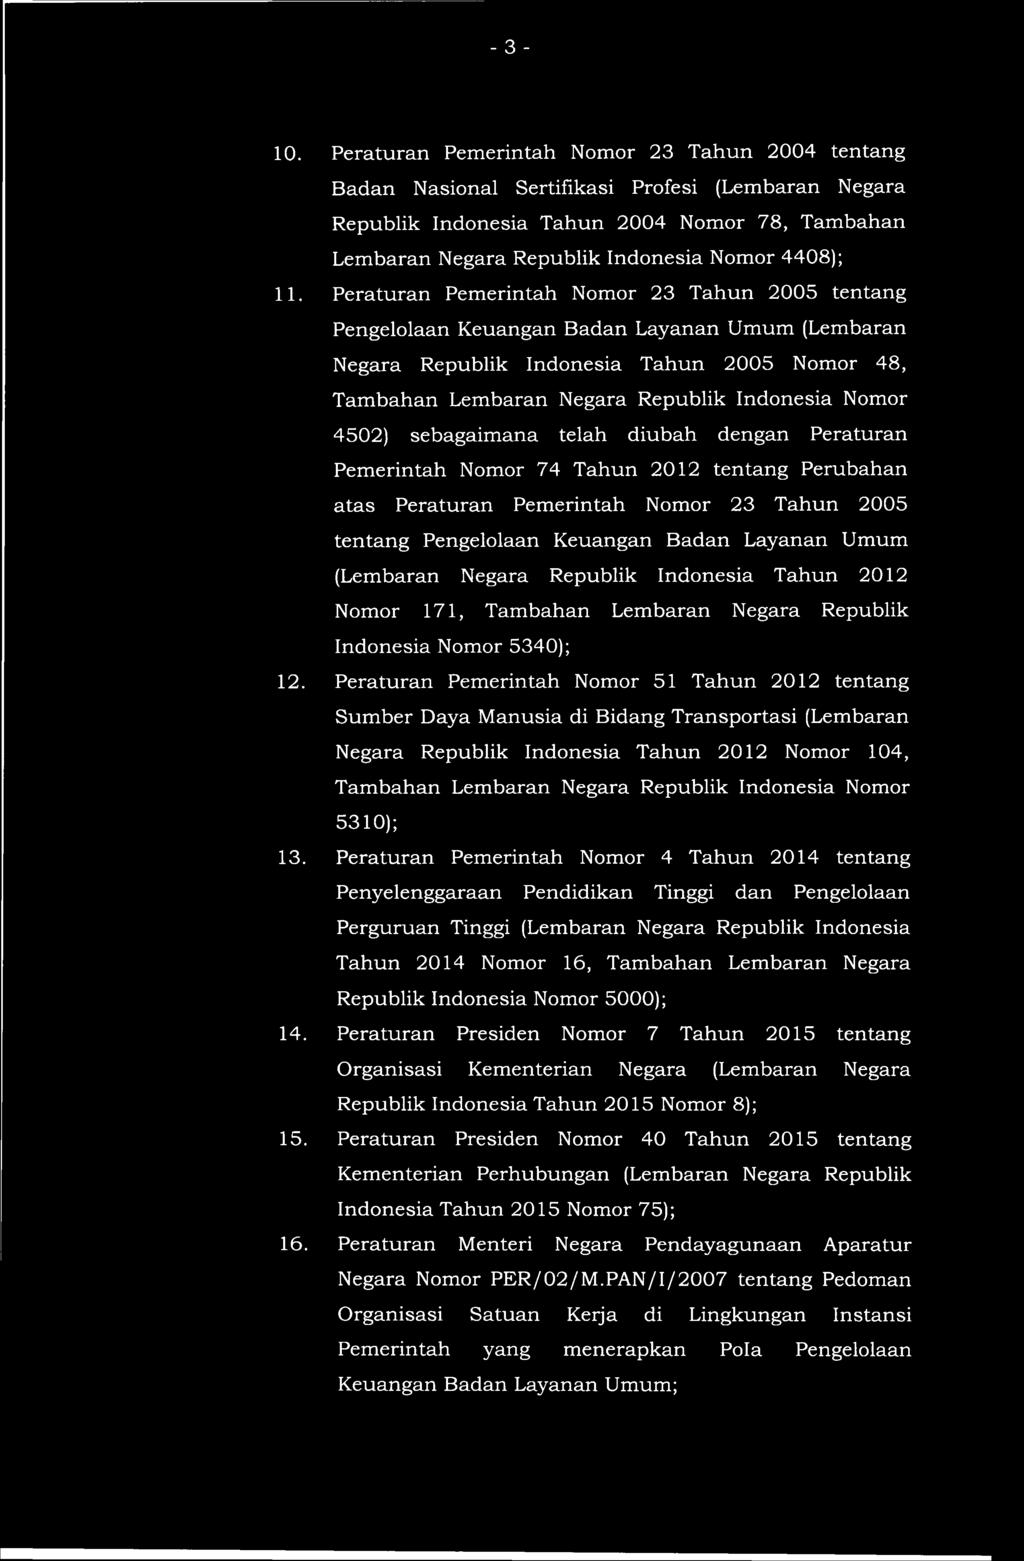 11. Peraturan Pemerintah Nomor 23 Tahun 2005 tentang Pengelolaan Keuangan Badan Layanan Umum (Lembaran Negara Republik Indonesia Tahun 2005 Nomor 48, Tambahan Lembaran Negara Republik Indonesia Nomor